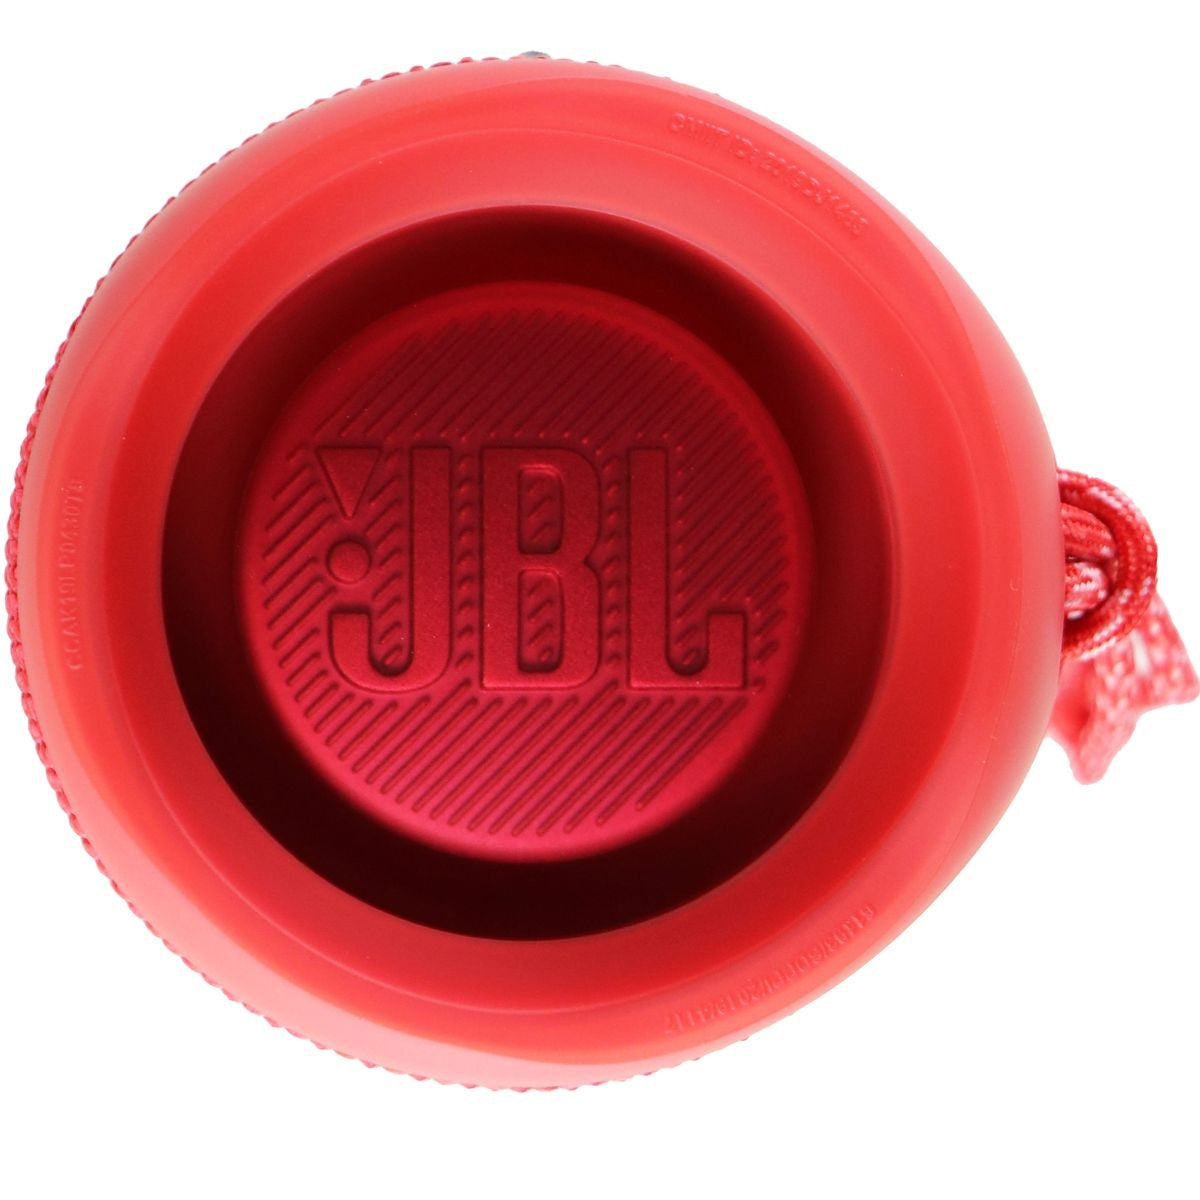 JBL Flip 5 Series Waterproof and Portable Bluetooth Speaker - Red Cell Phone - Audio Docks & Speakers JBL    - Simple Cell Bulk Wholesale Pricing - USA Seller